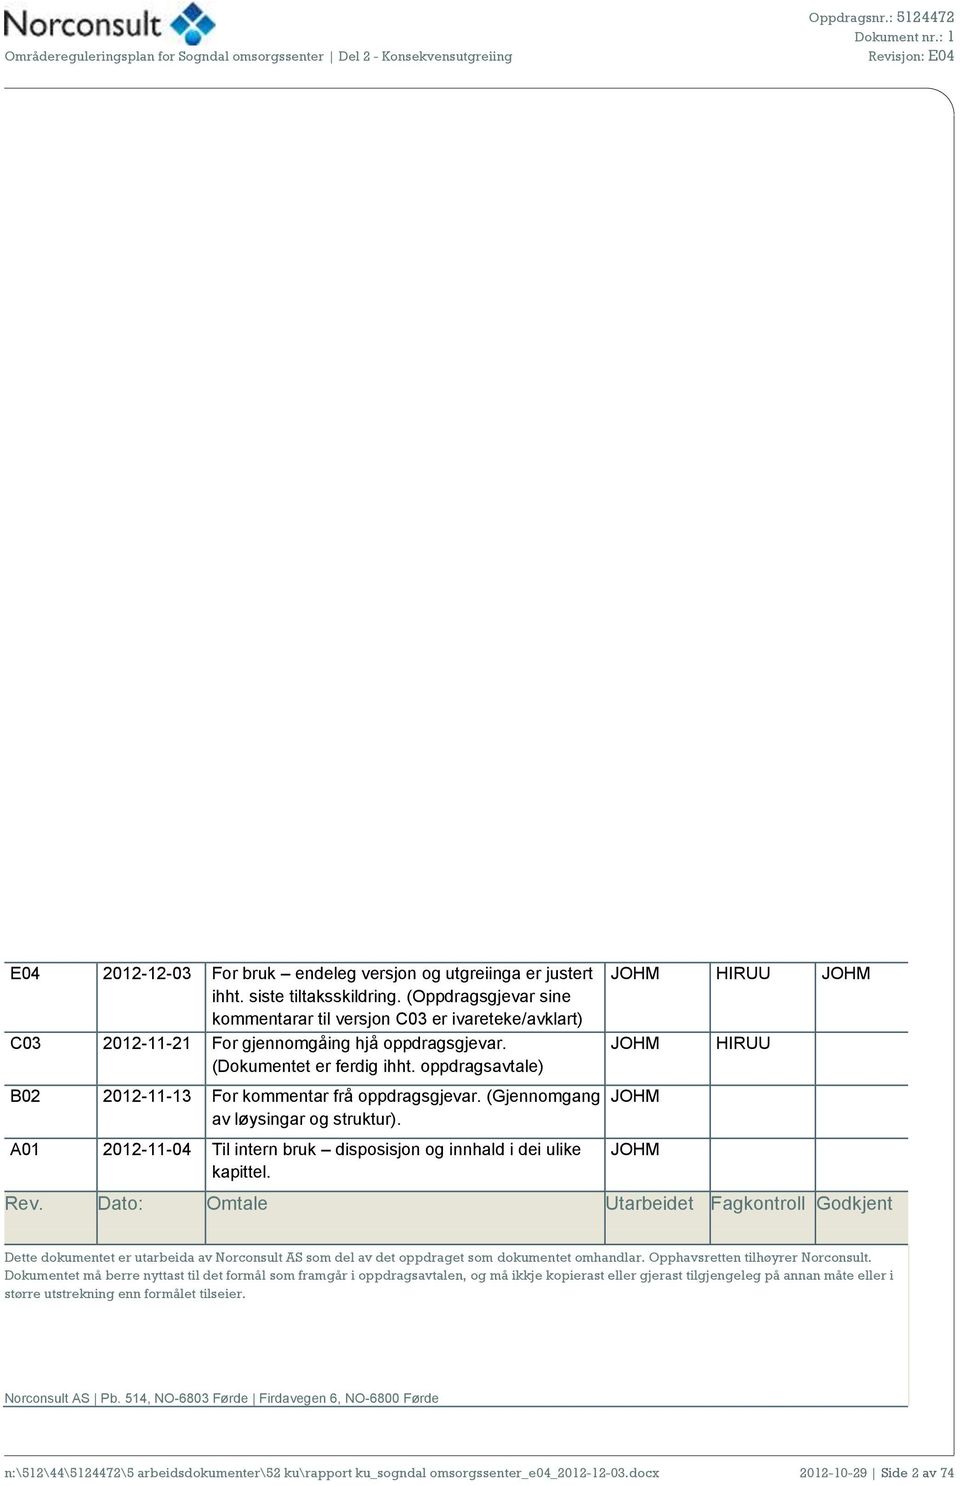 oppdragsavtale) B02 2012-11-13 For kommentar frå oppdragsgjevar. (Gjennomgang av løysingar og struktur). A01 2012-11-04 Til intern bruk disposisjon og innhald i dei ulike kapittel.